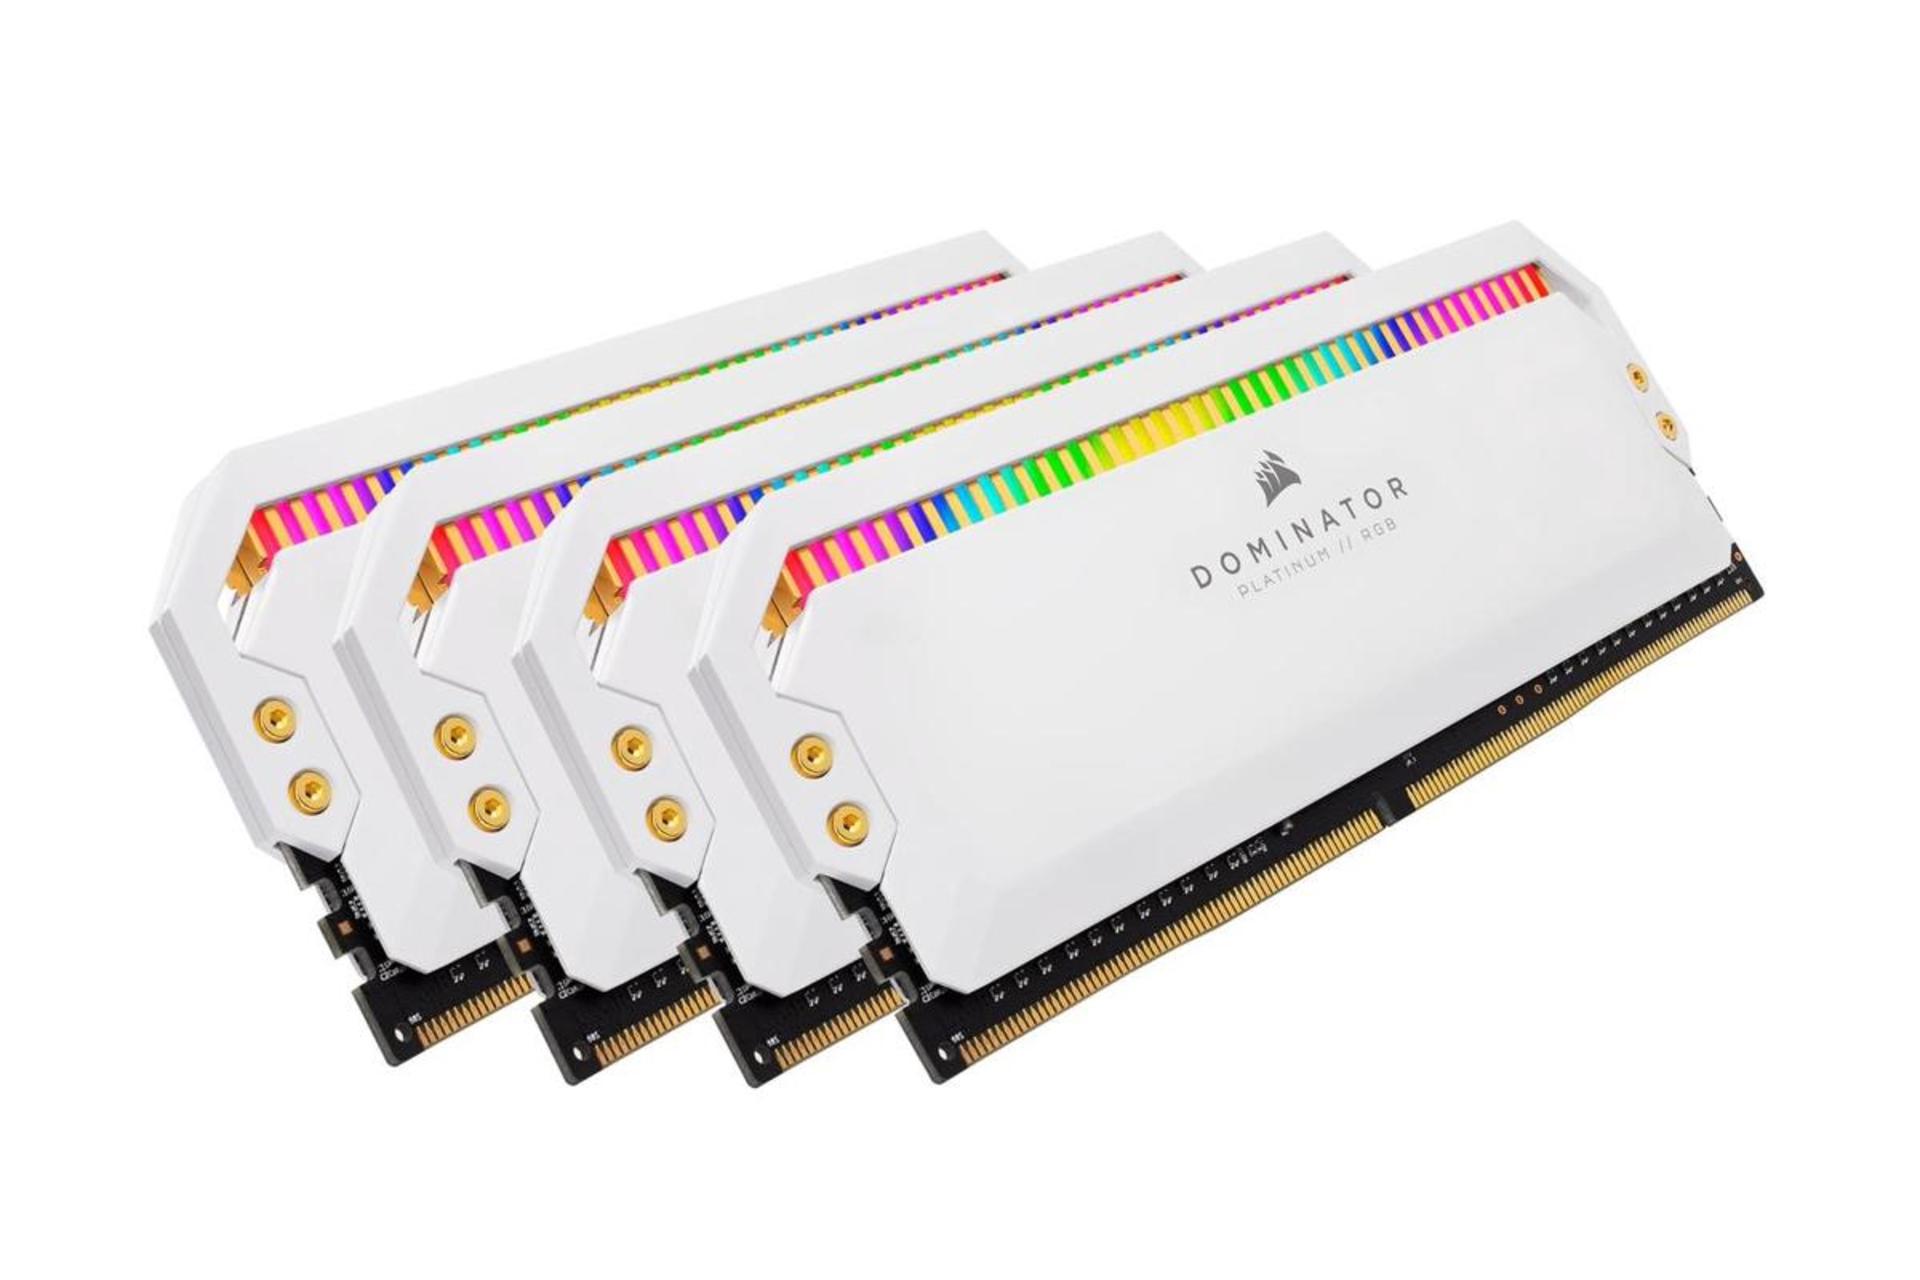 نمای کناری رم کورسیر DOMINATOR PLATINUM RGB ظرفیت 64 گیگابایت (4x16) از نوع DDR4-3466